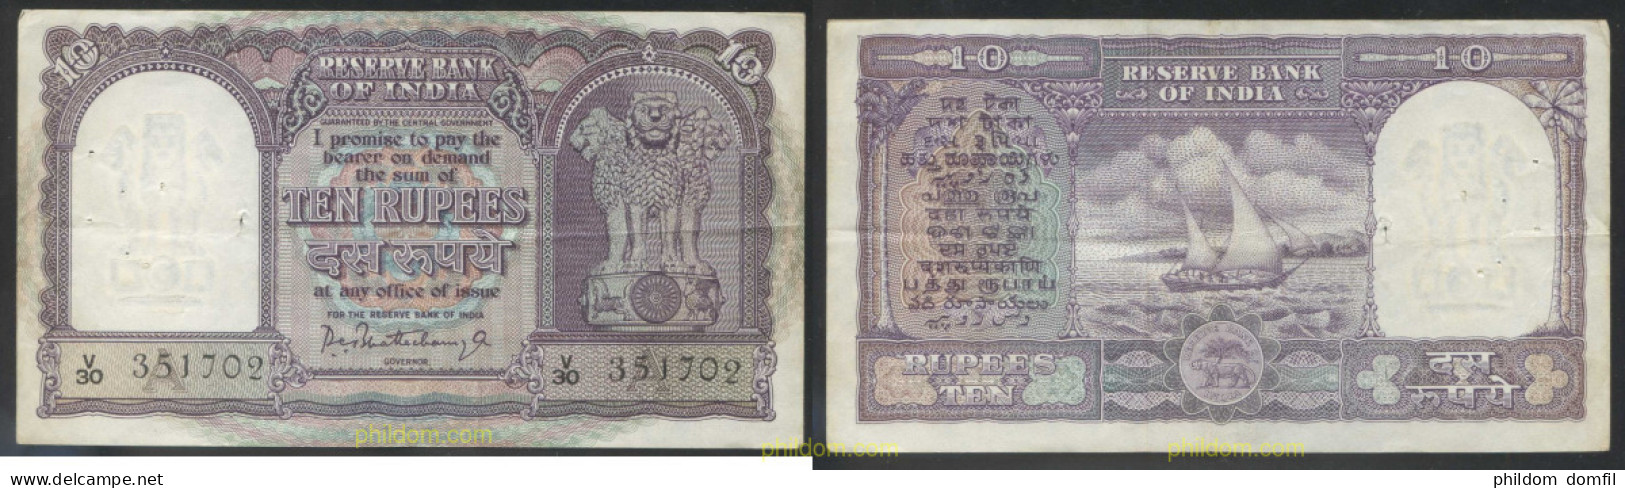 4610 INDIA 1967 INDIA 10 RUPEES 1967 - India